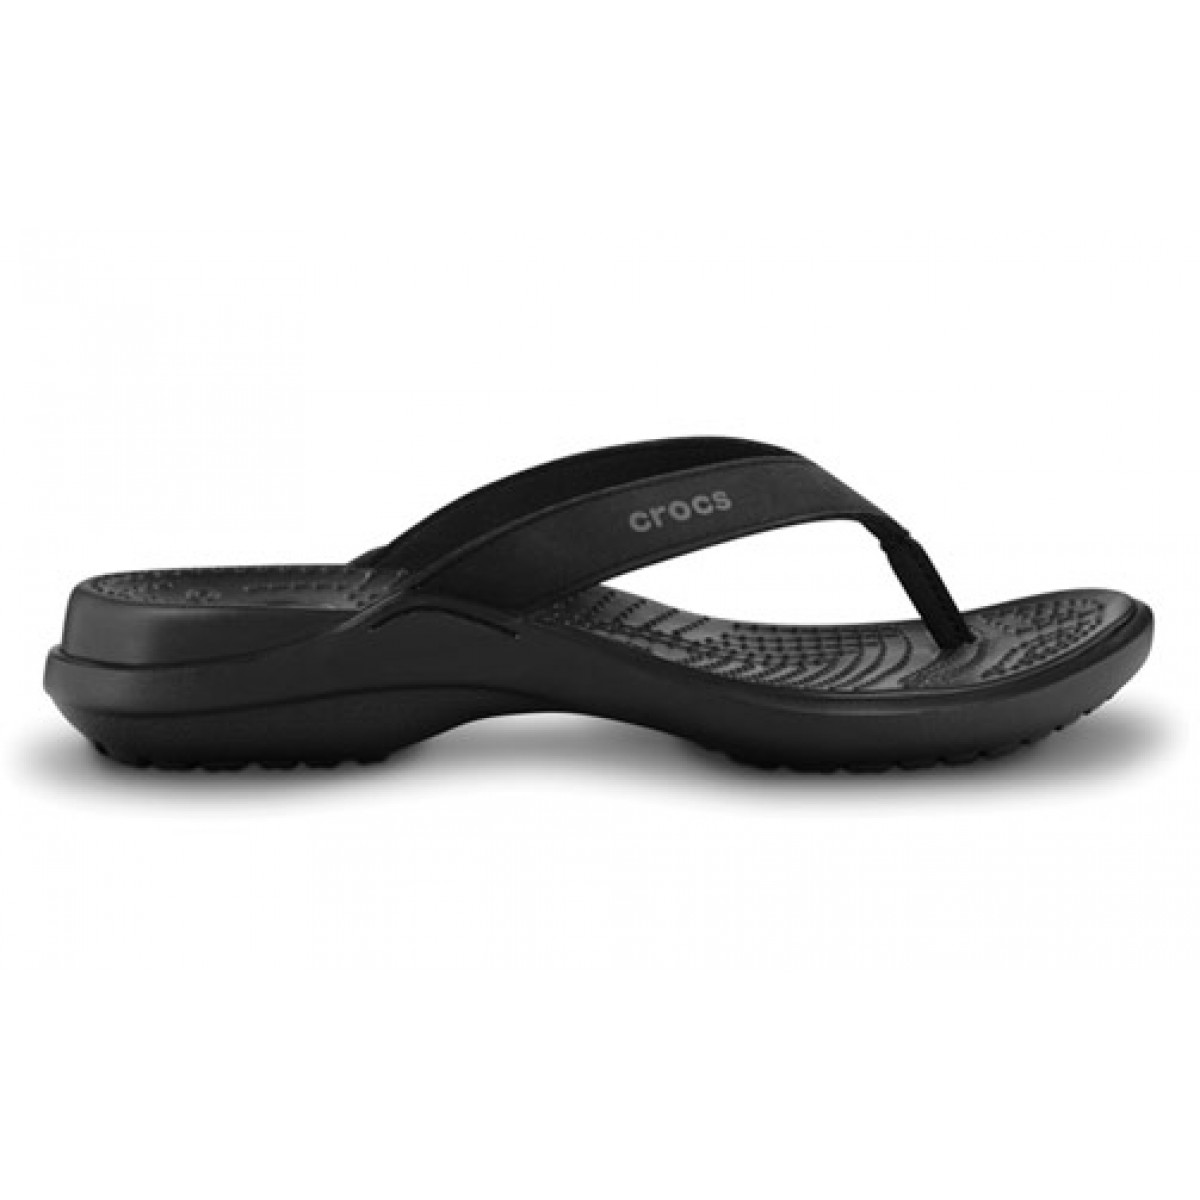 berouw hebben onvoorwaardelijk Specialiteit Crocs Capri iv slipper mt. 33,5 - Crocs dames slippers - Crocs |  Awa-Sports.nl